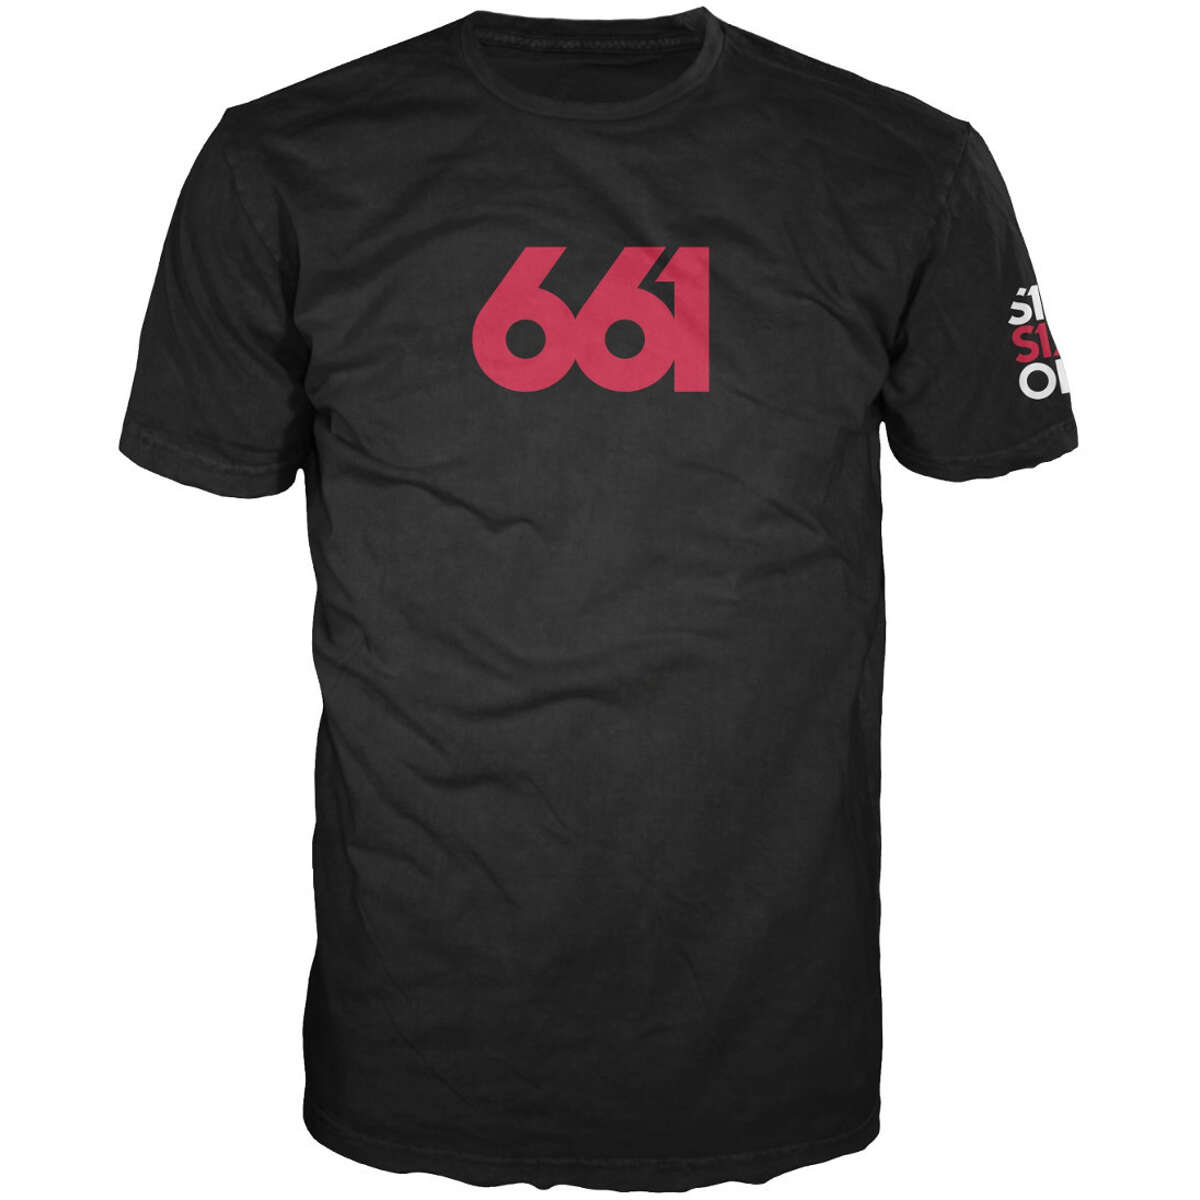 SixSixOne T-Shirt Numeric Premium Black